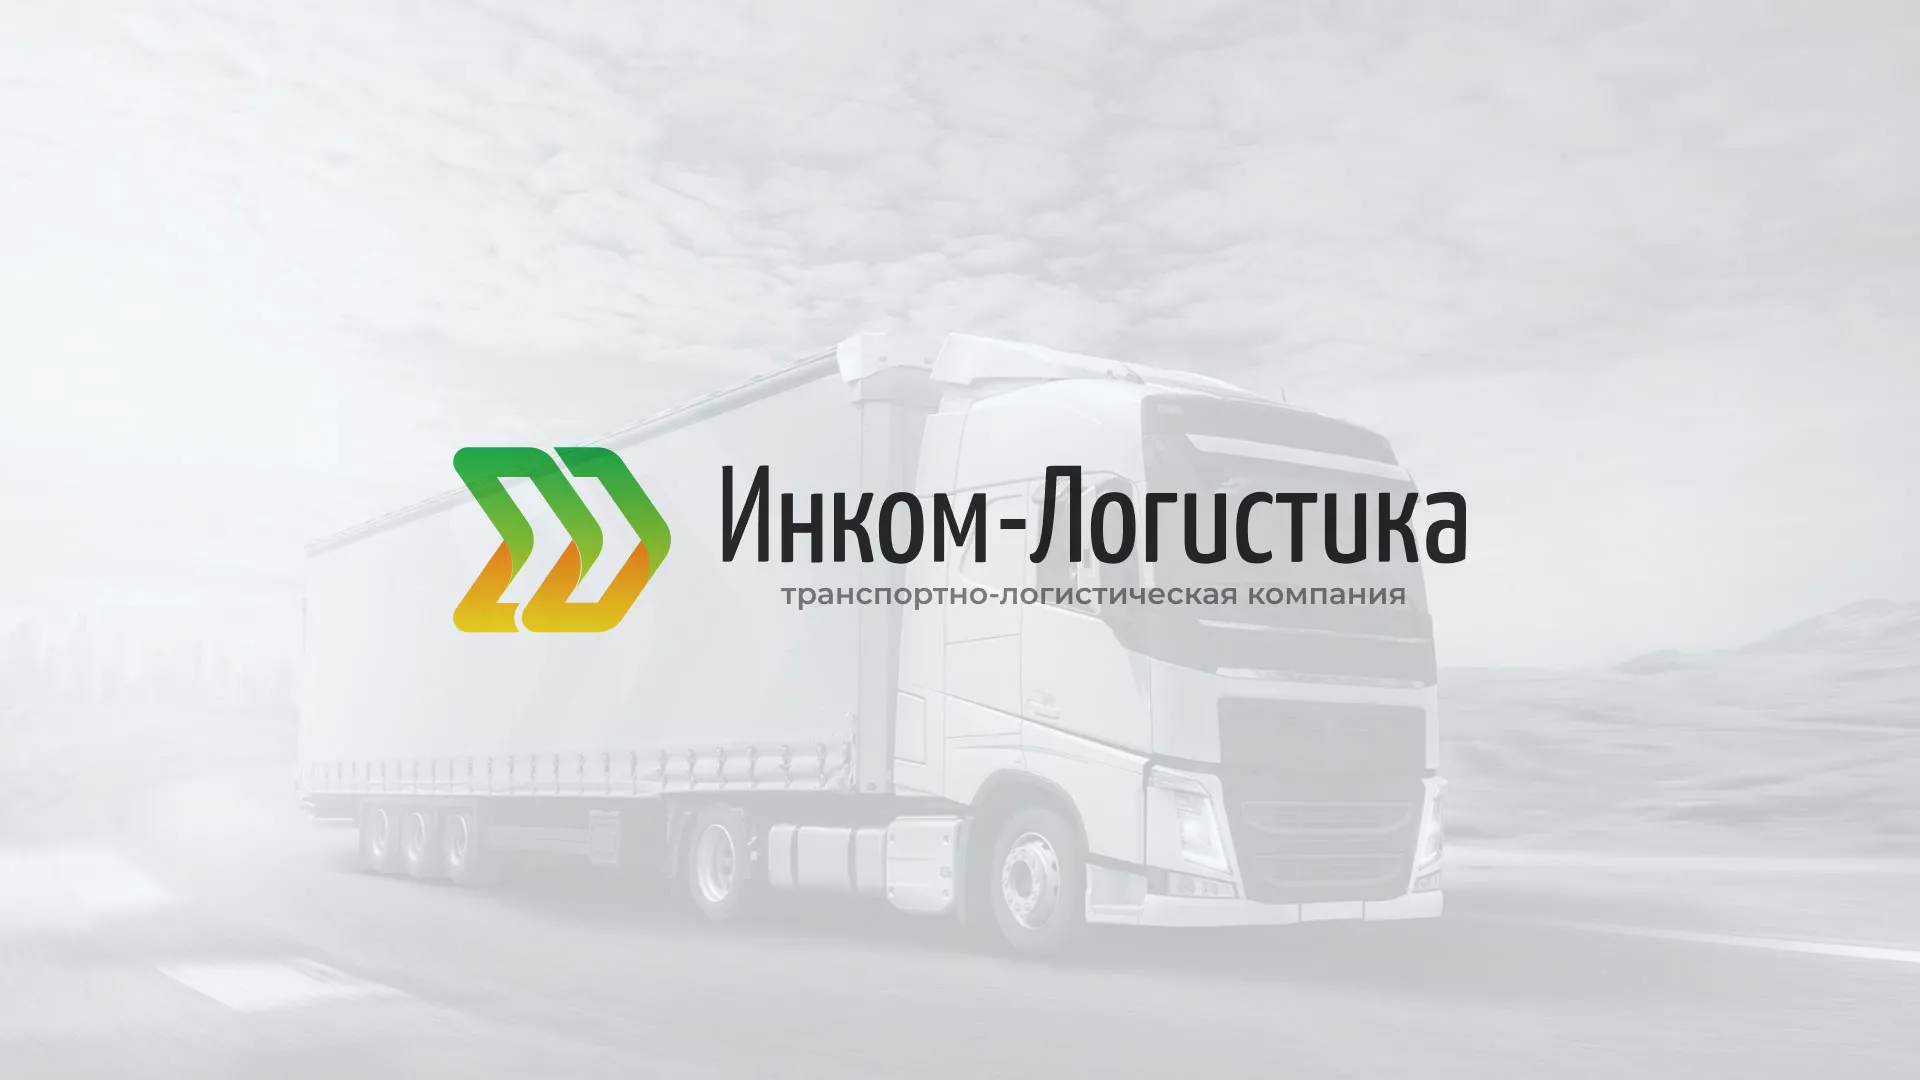 Разработка логотипа и сайта компании «Инком-Логистика» в Димитровграде